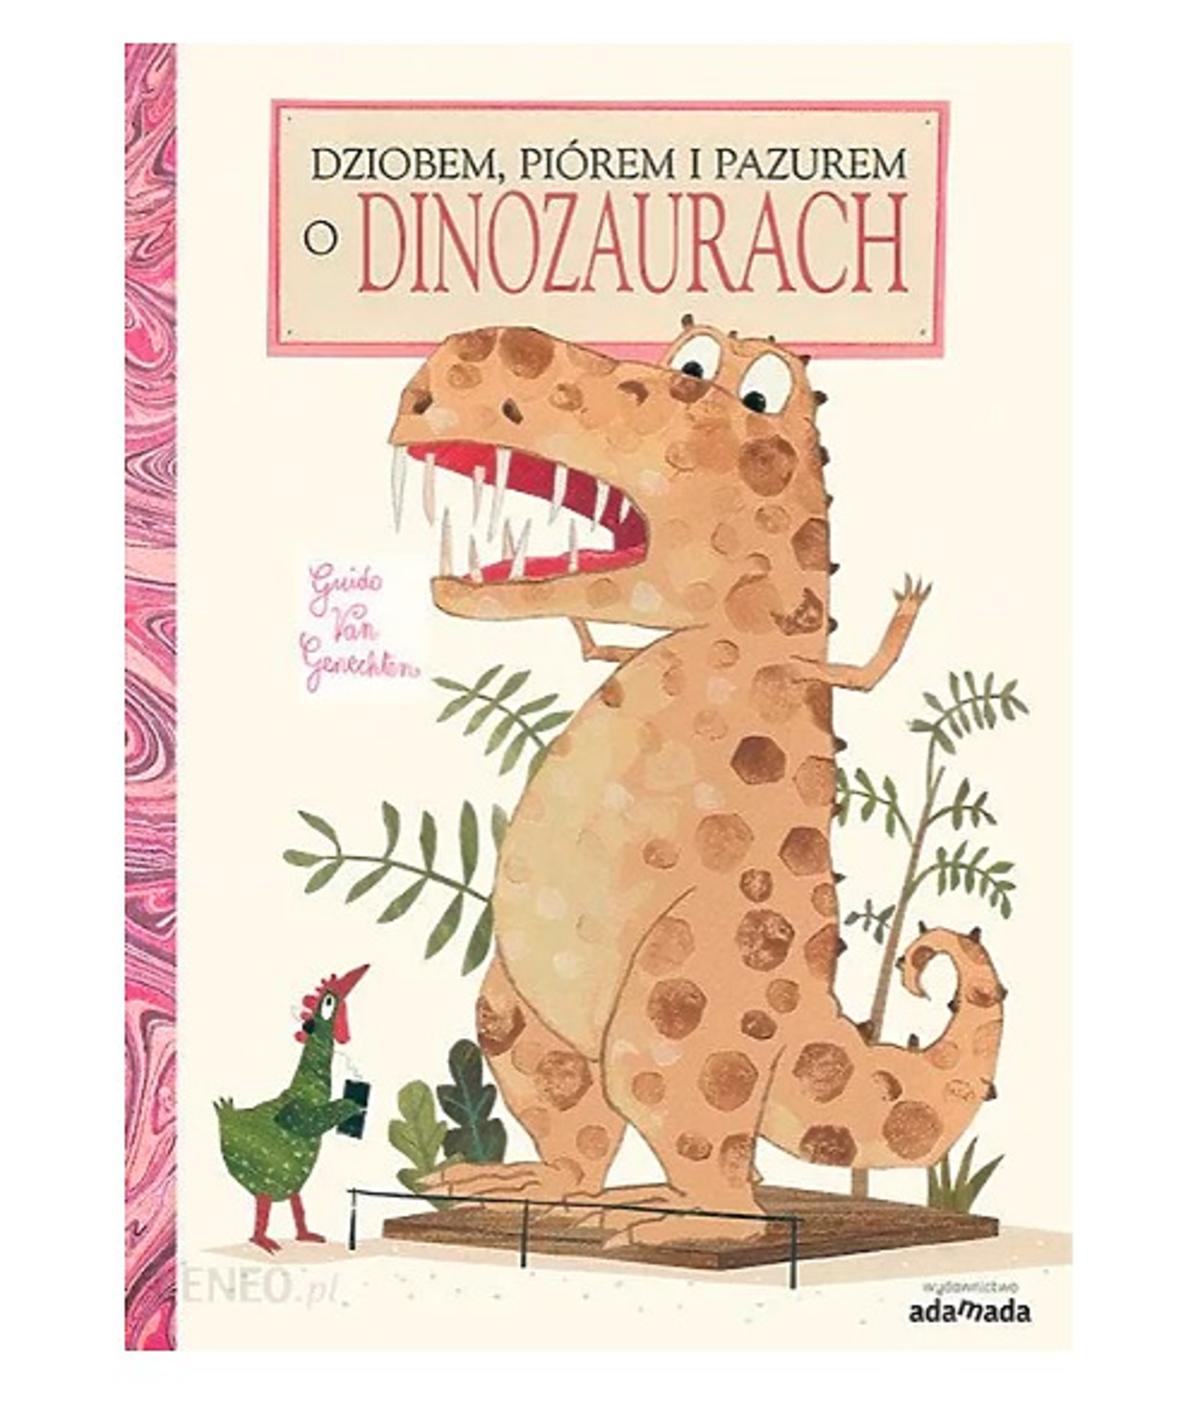 Książka o dinozaurach: Dziobem, piórem i pazurem o dinozaurach